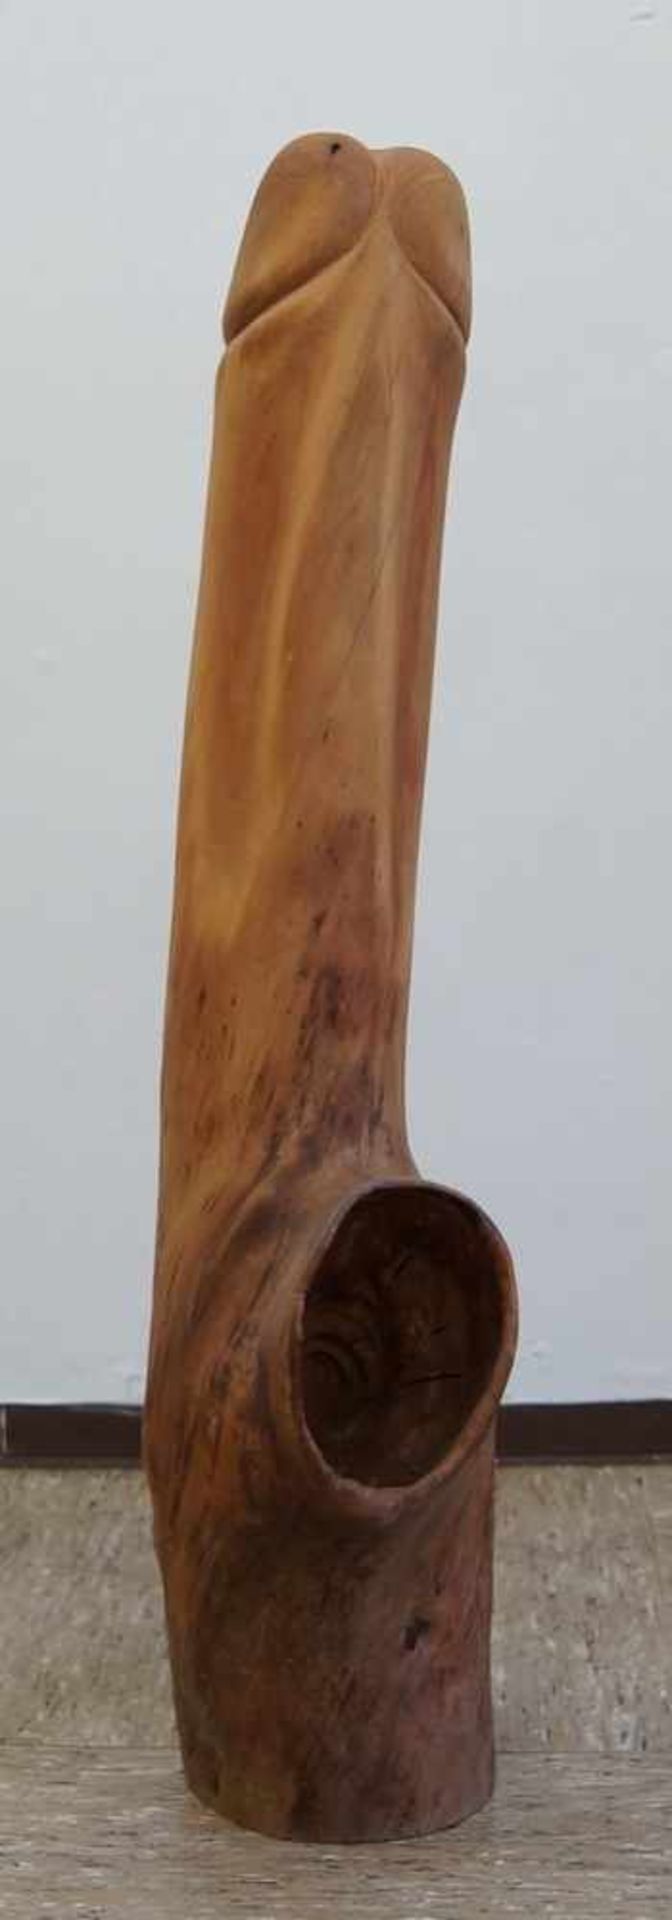 Übergrosser Phallus aus einem Stamm geschnitzt, H 91cm - Bild 2 aus 5